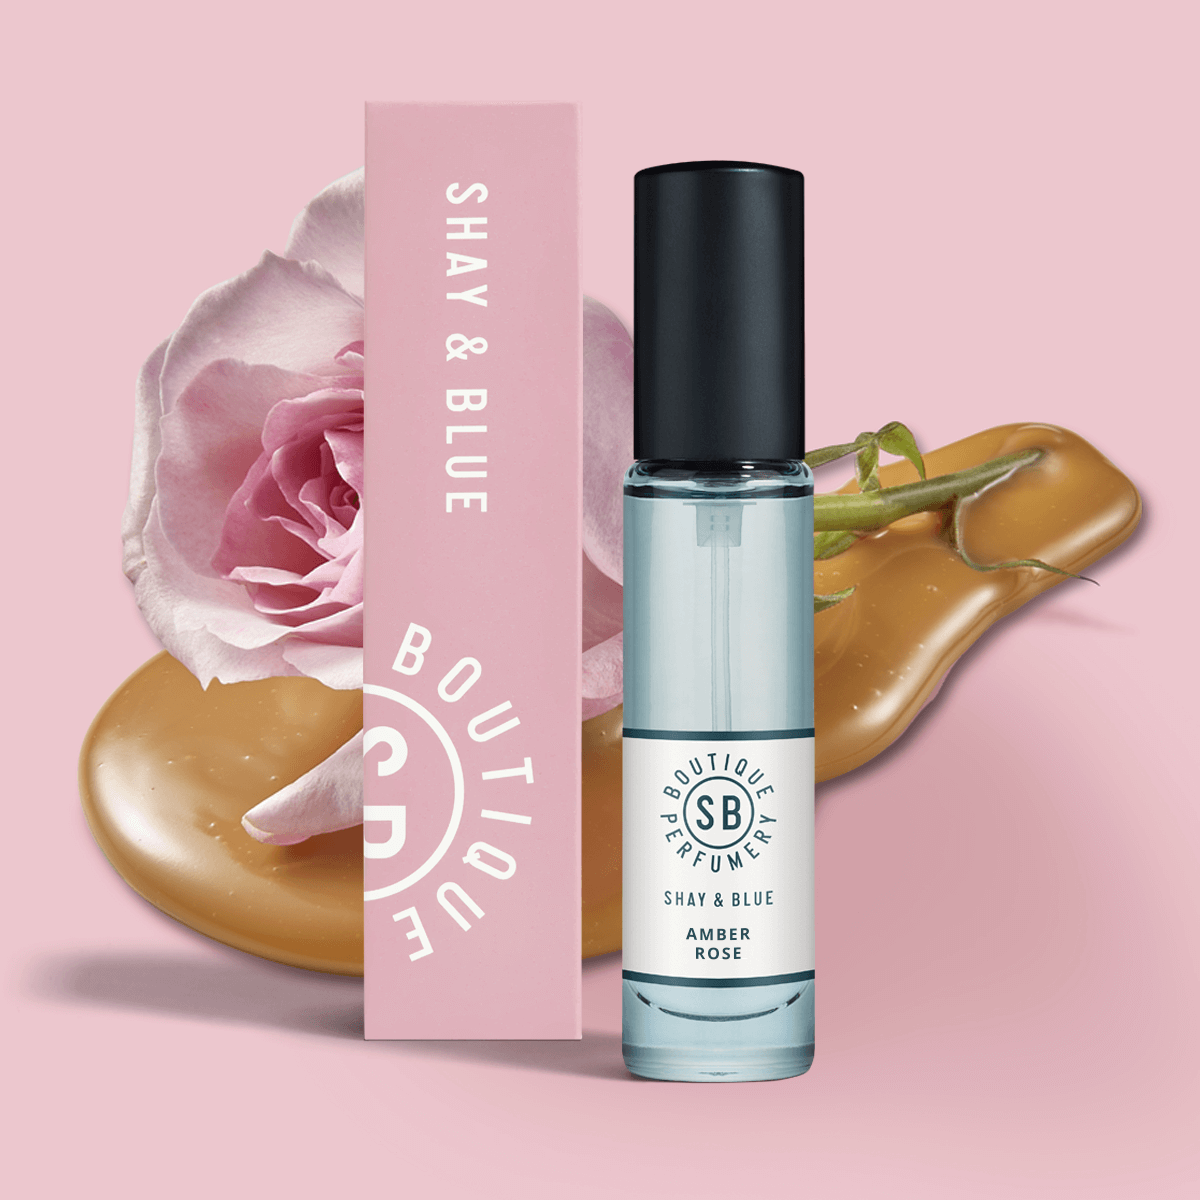 Amber Rose Fragrance 10ml | La nuova stagione della rosa di maggio si unisce all'ambra bianca e a dolci note cremose. | Fragranza pulita per tutti i generi | Shay & Blue